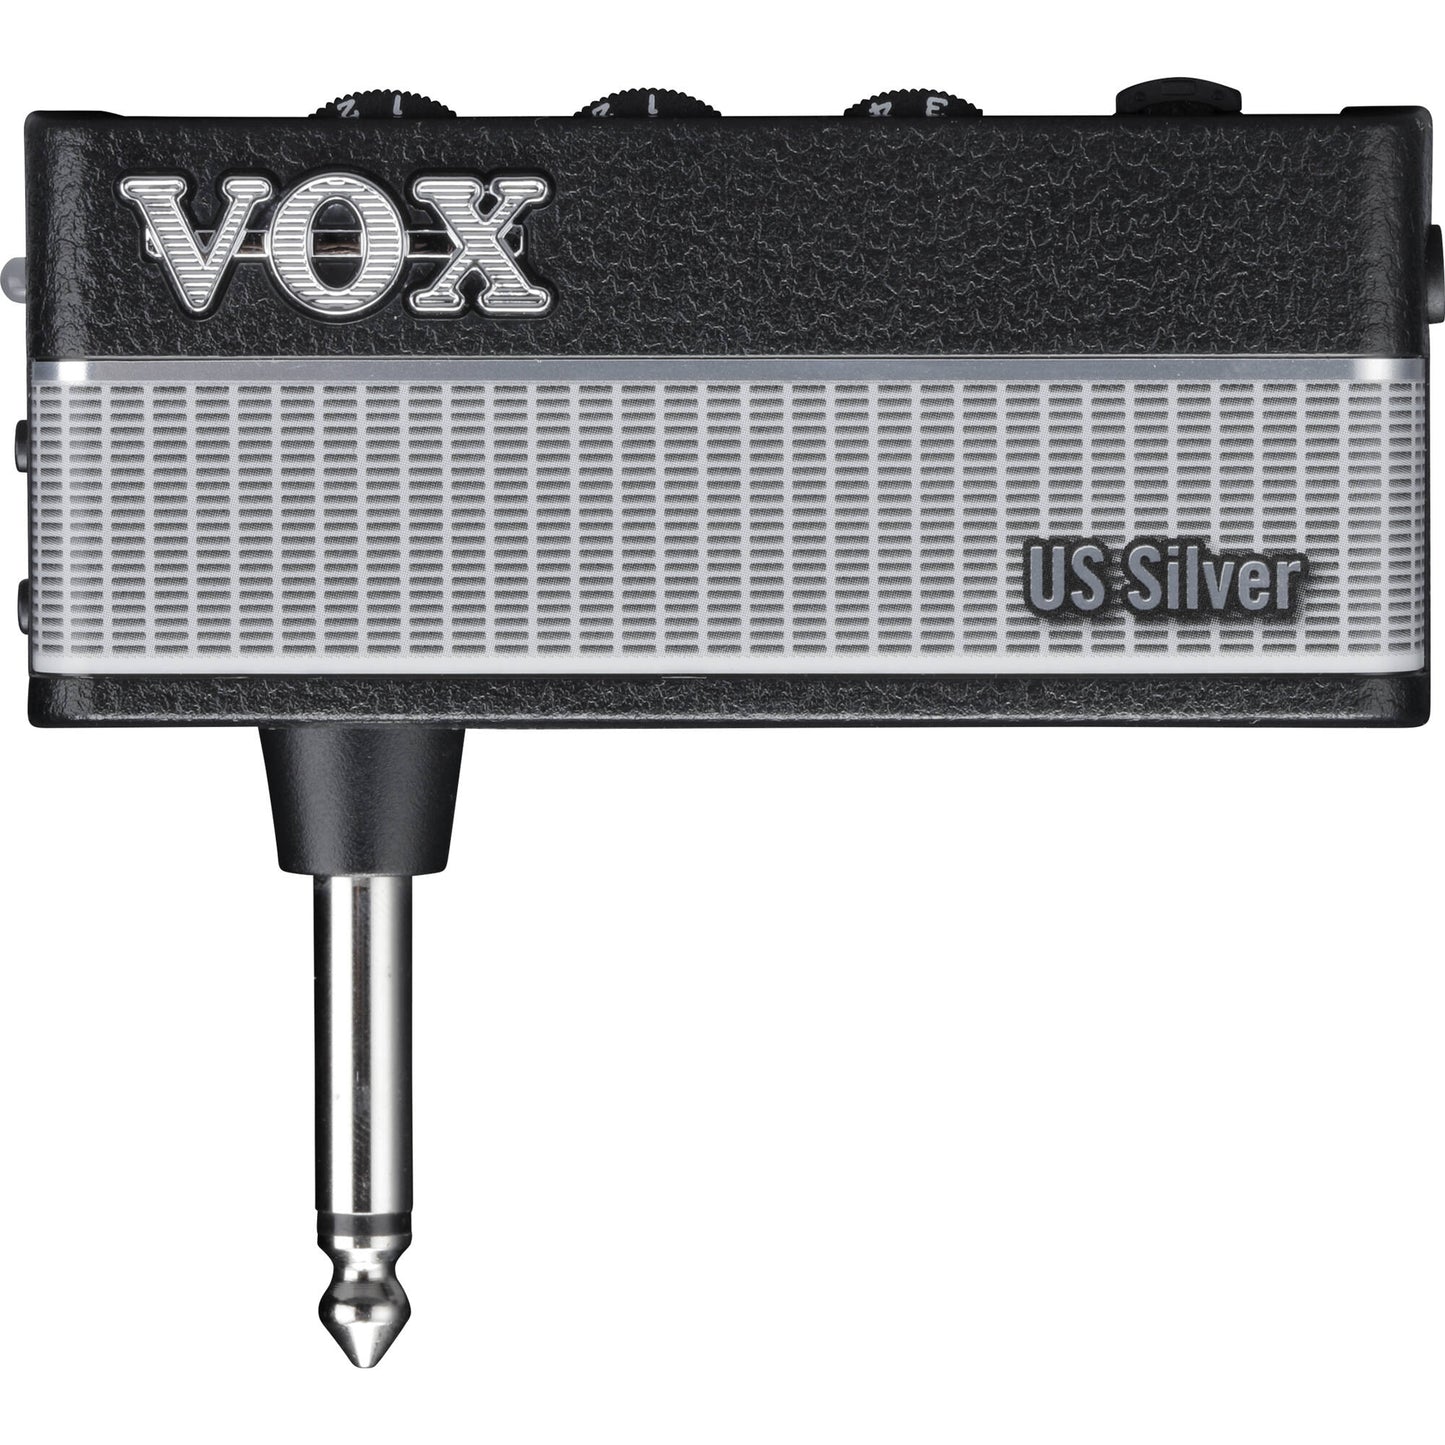 Vox AmPlug3 US Silver Headphone Amp